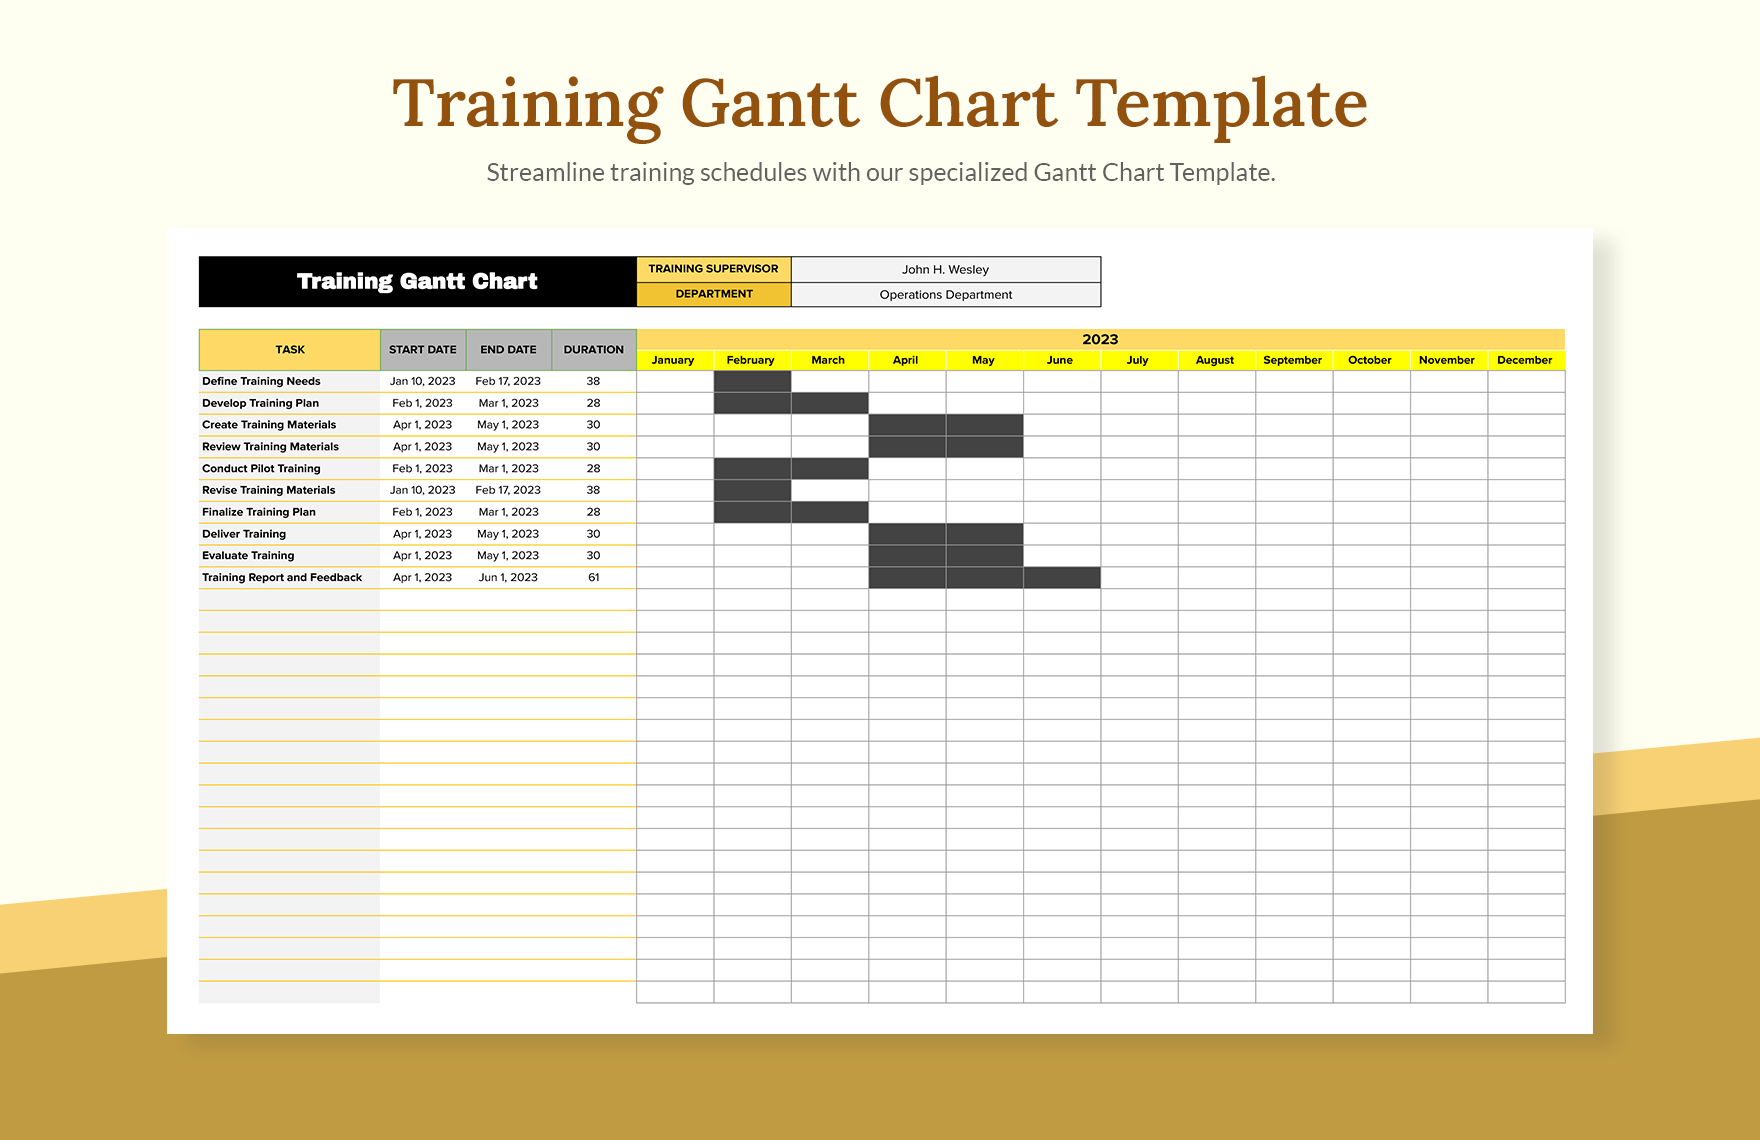 Training Gantt Chart Template